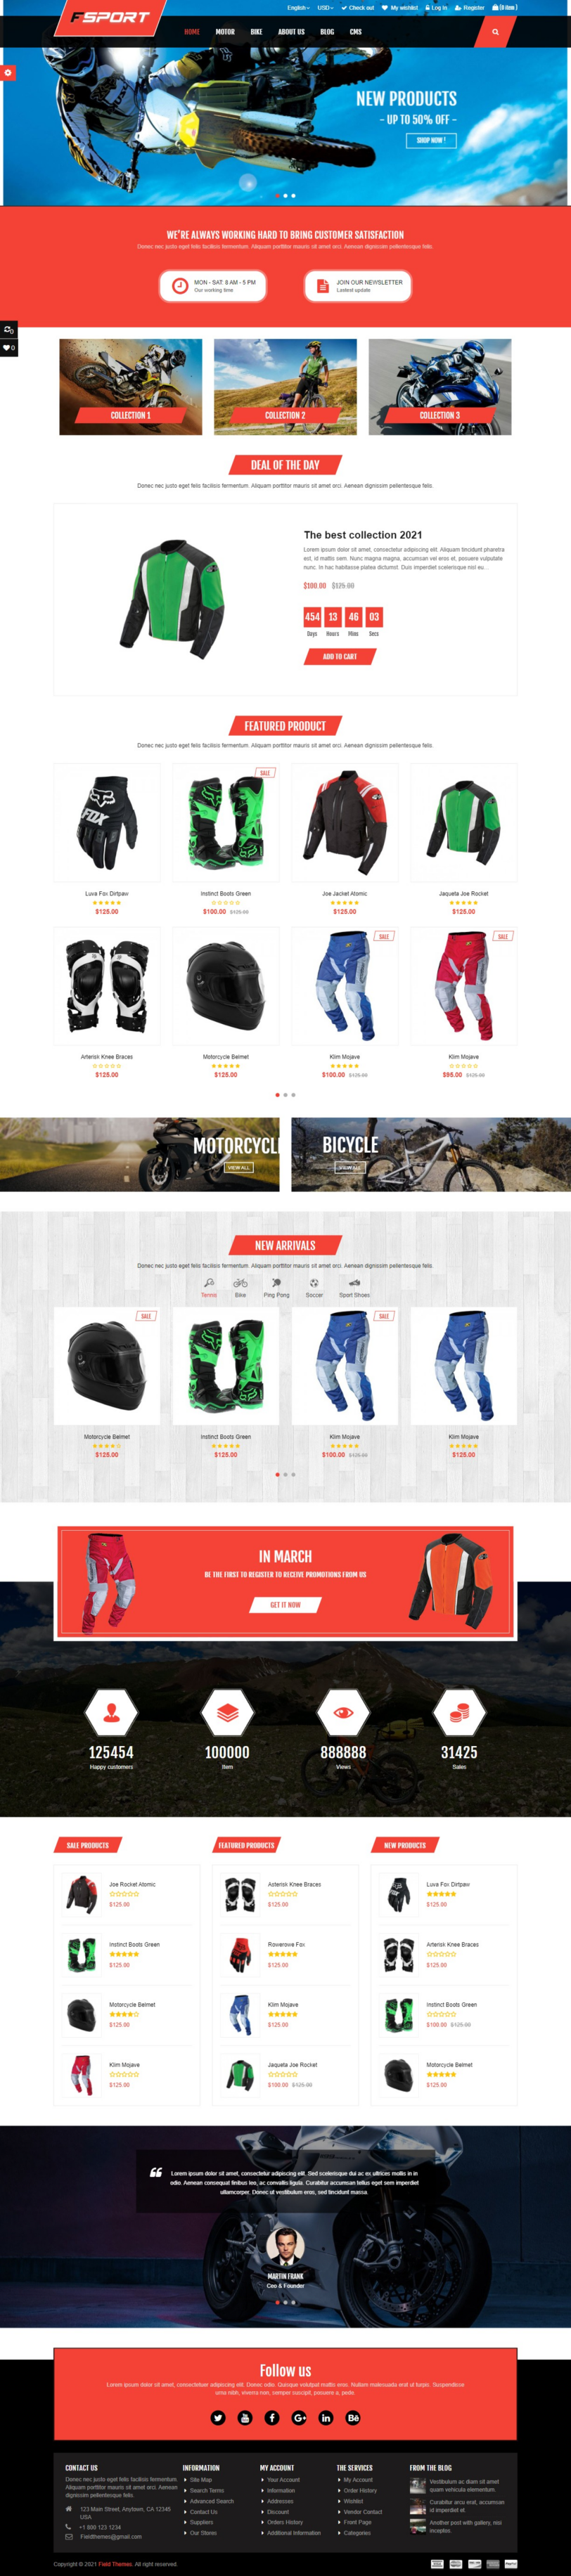 mẫu giao diện website mô tô fsport